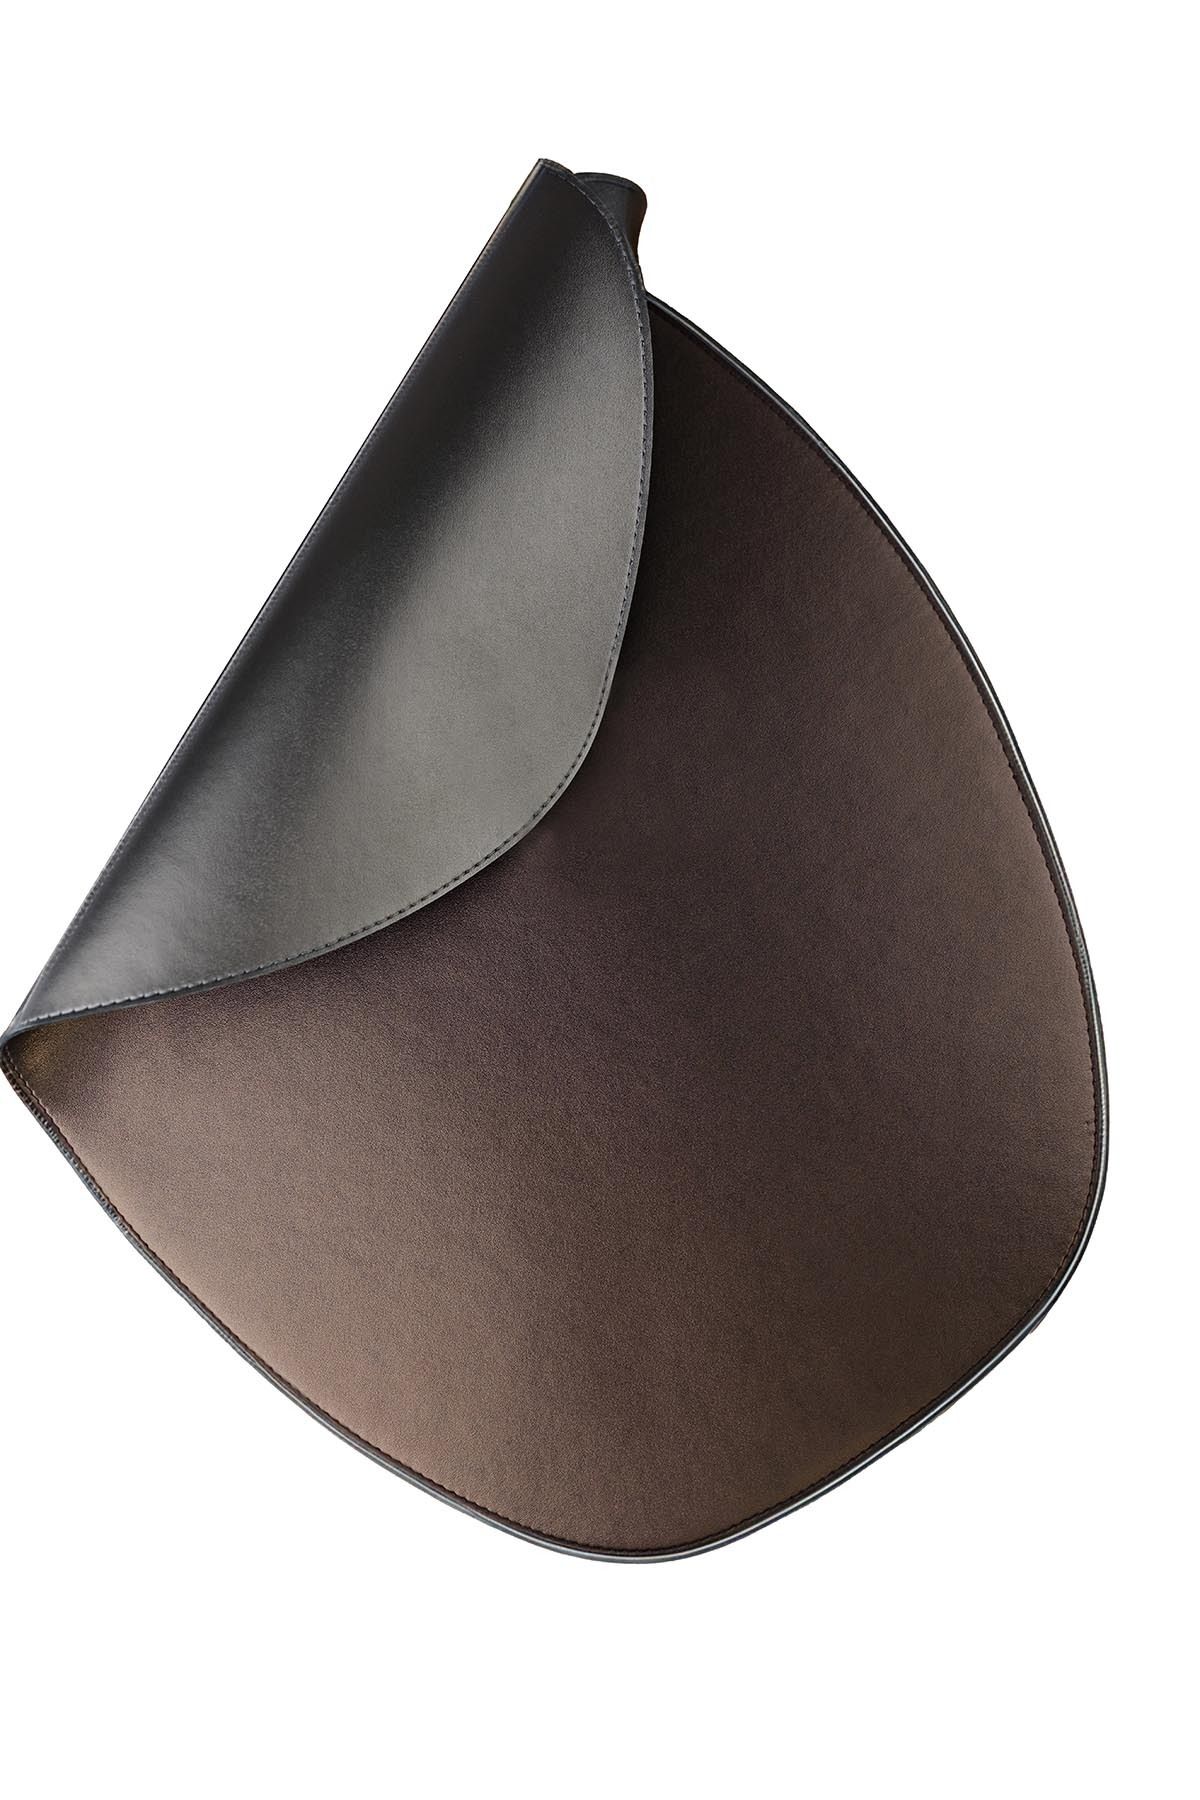 Kütahya Porselen Amerikan Servis Oval Metalik GriBakır